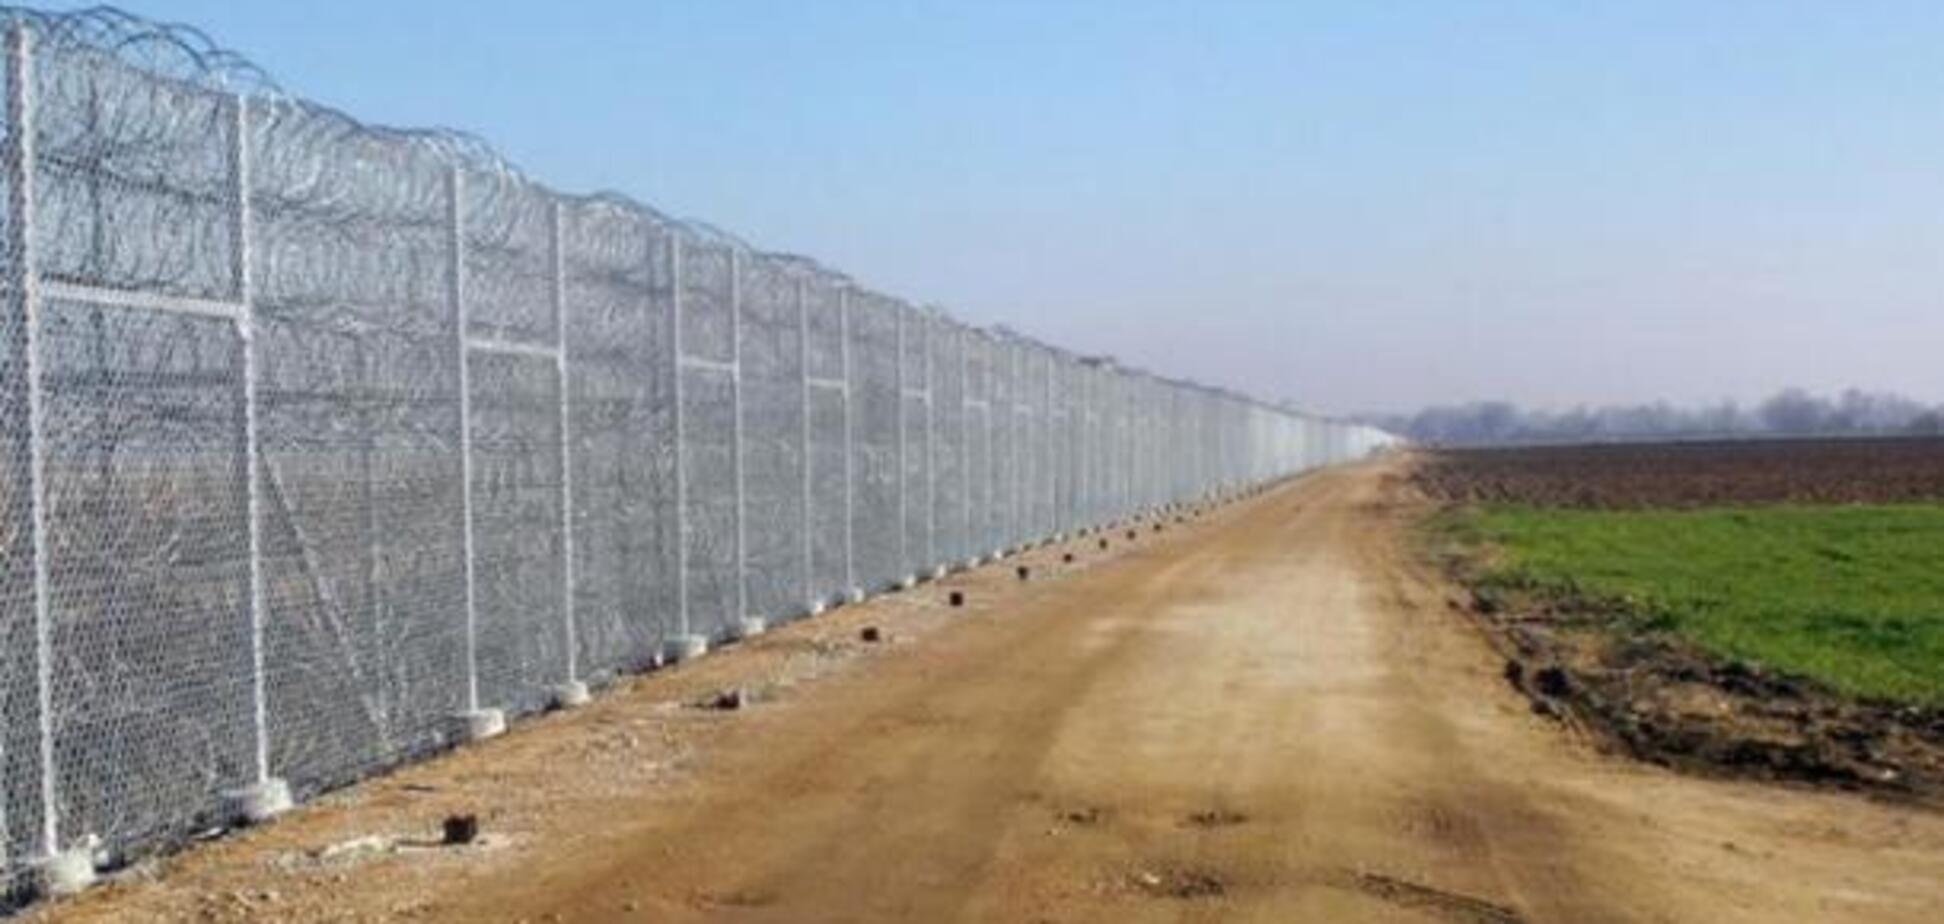 'Стена' на границе с Россией: у фигуранта дела найдены десятки тысяч долларов